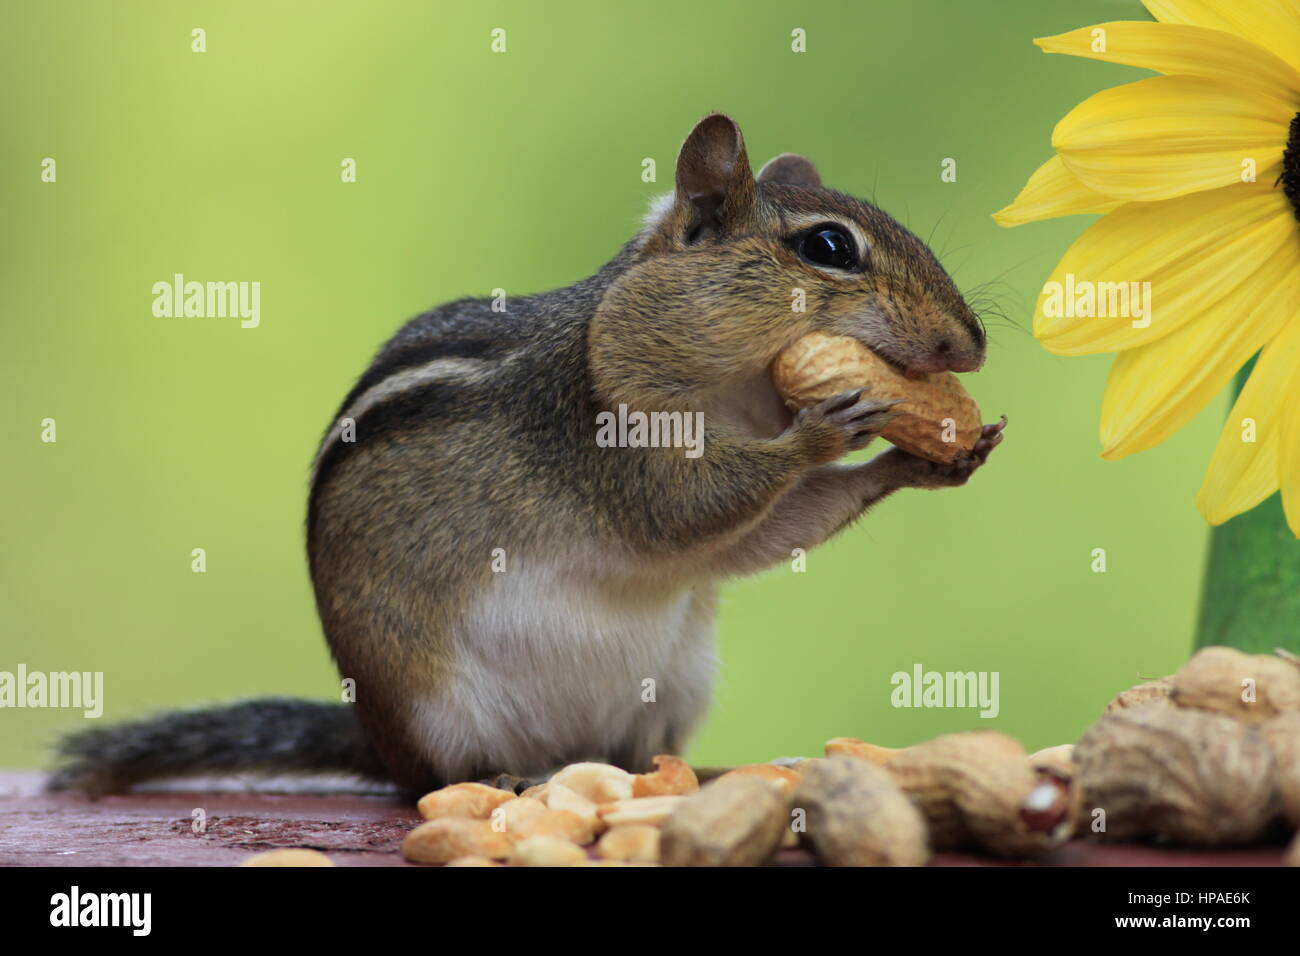 Le Tamia rayé adorable adore manger des arachides et se tient à côté d'un tournesol de citron avec un beau fond vert Banque D'Images